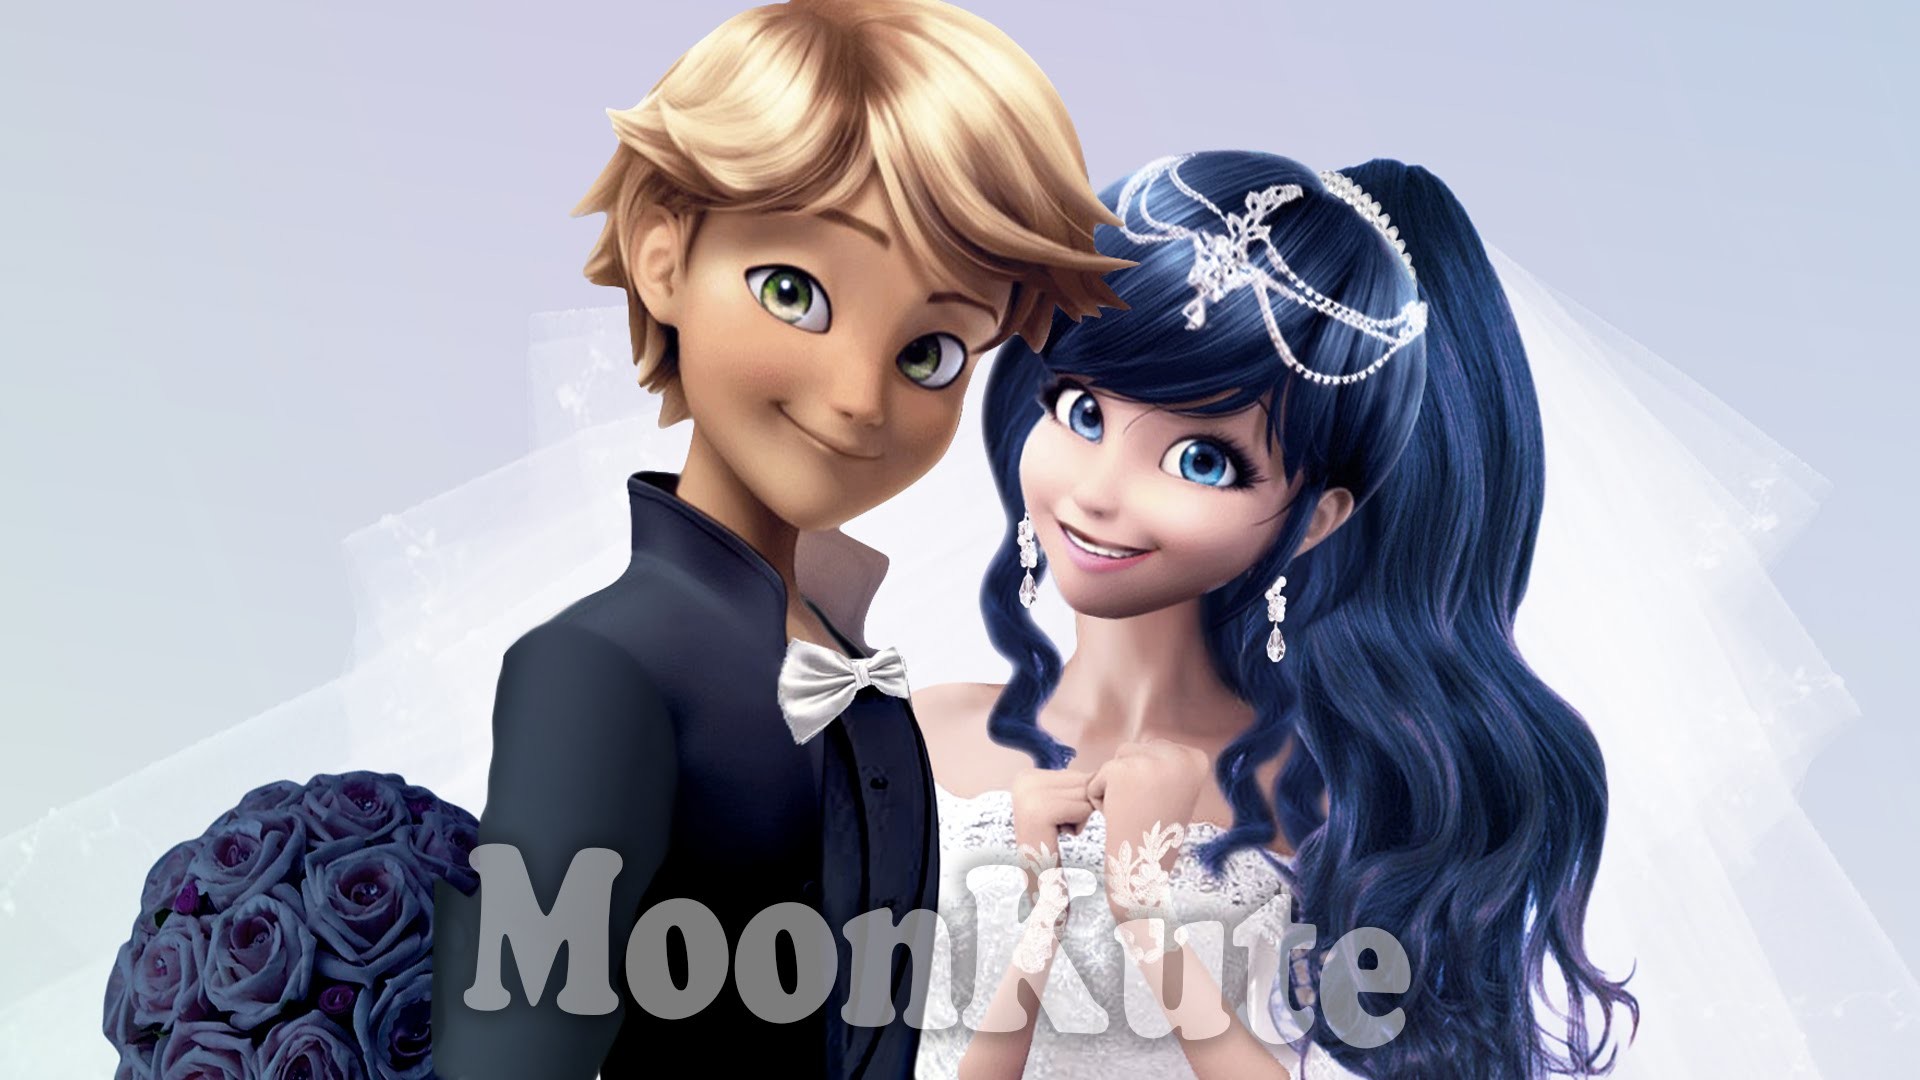 1920x1080 WEDDING â¥ Marienette and Adrien â¥ Miraculous Ladybug Wedding - MoonKute -  YouTube